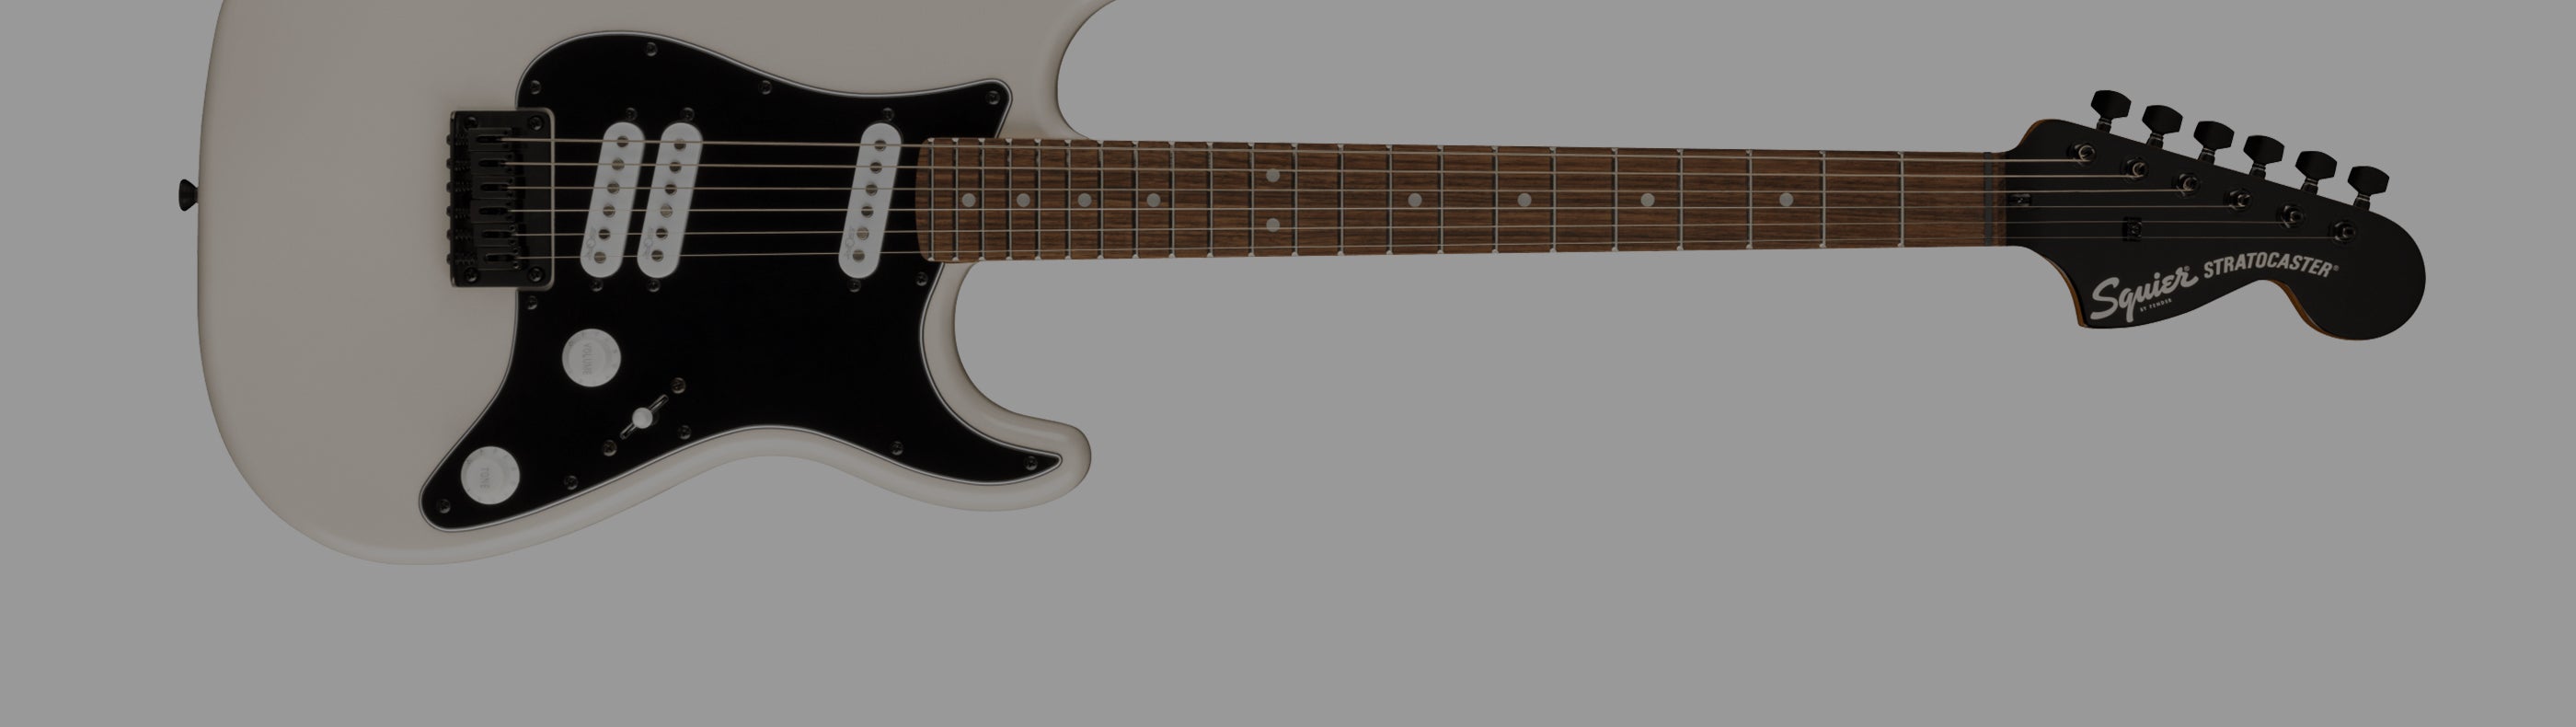 Contemporary Stratocaster Special